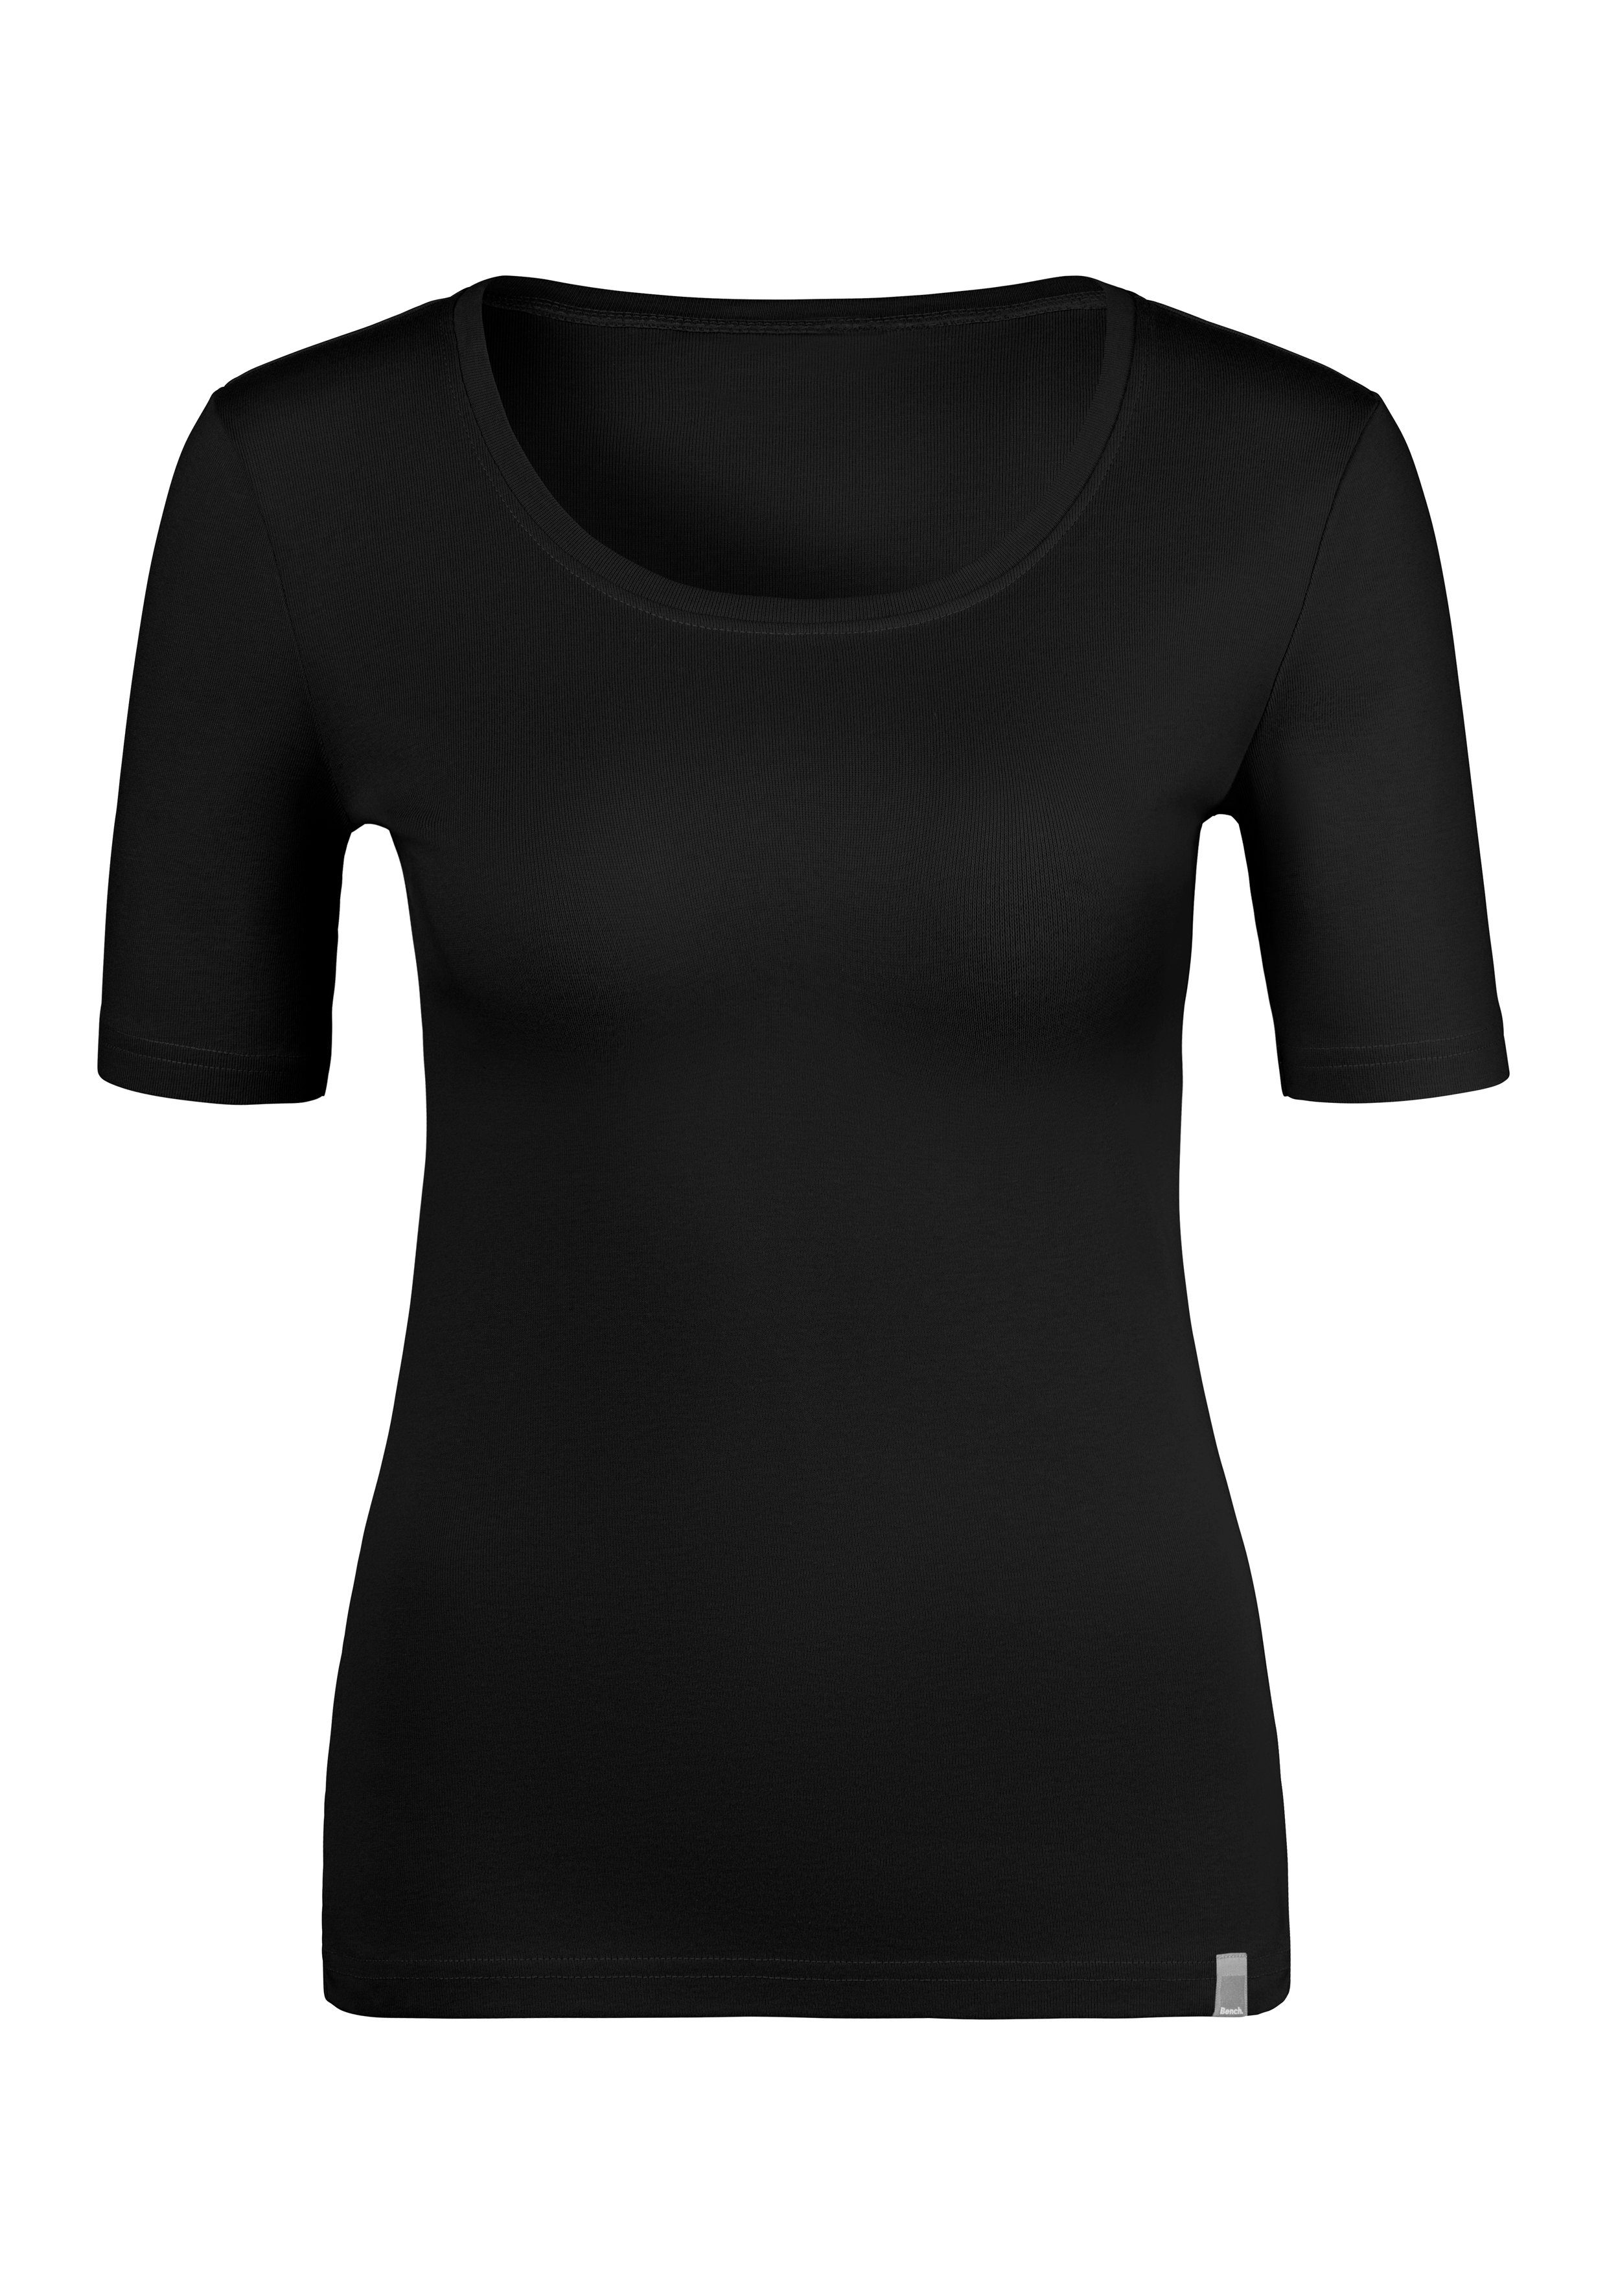 Bench. T-Shirt rose, schwarz (2er-Pack) weicher Unterziehshirt aus Feinripp-Qualität